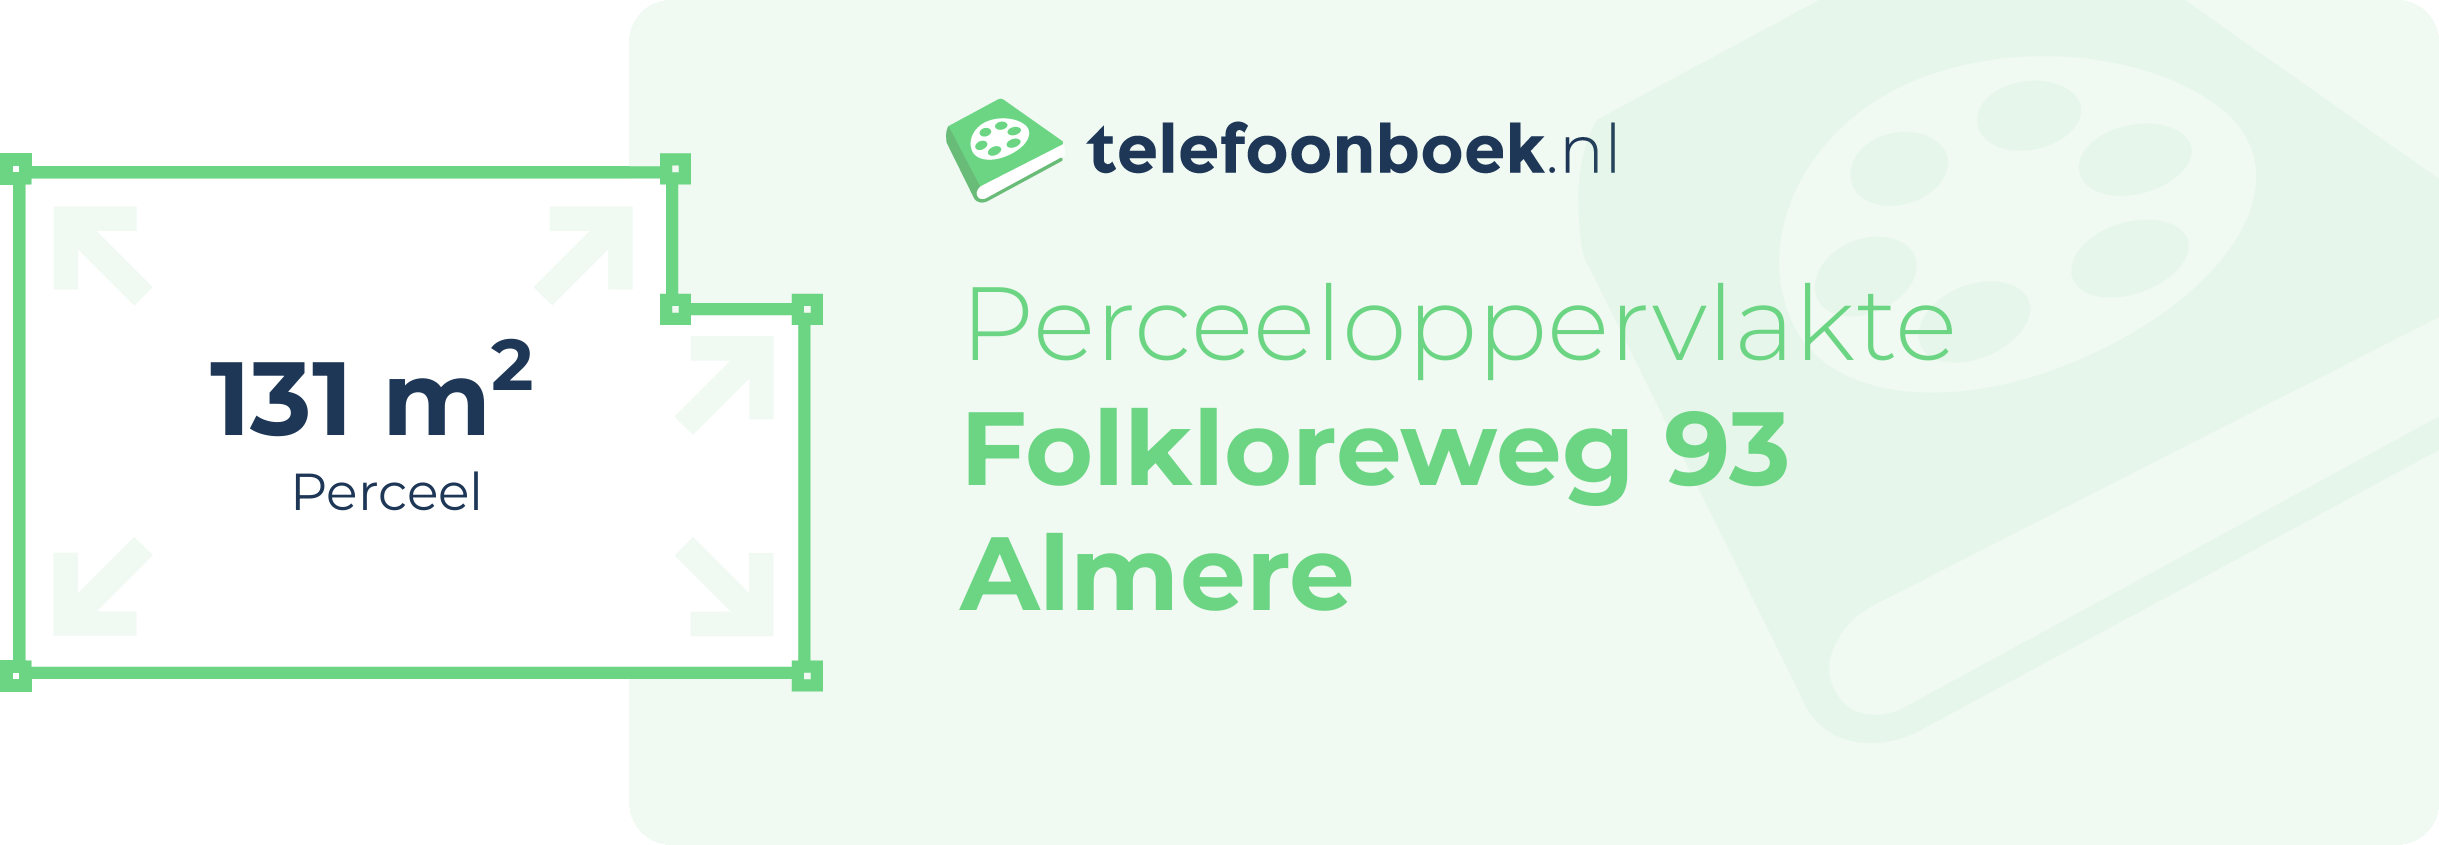 Perceeloppervlakte Folkloreweg 93 Almere